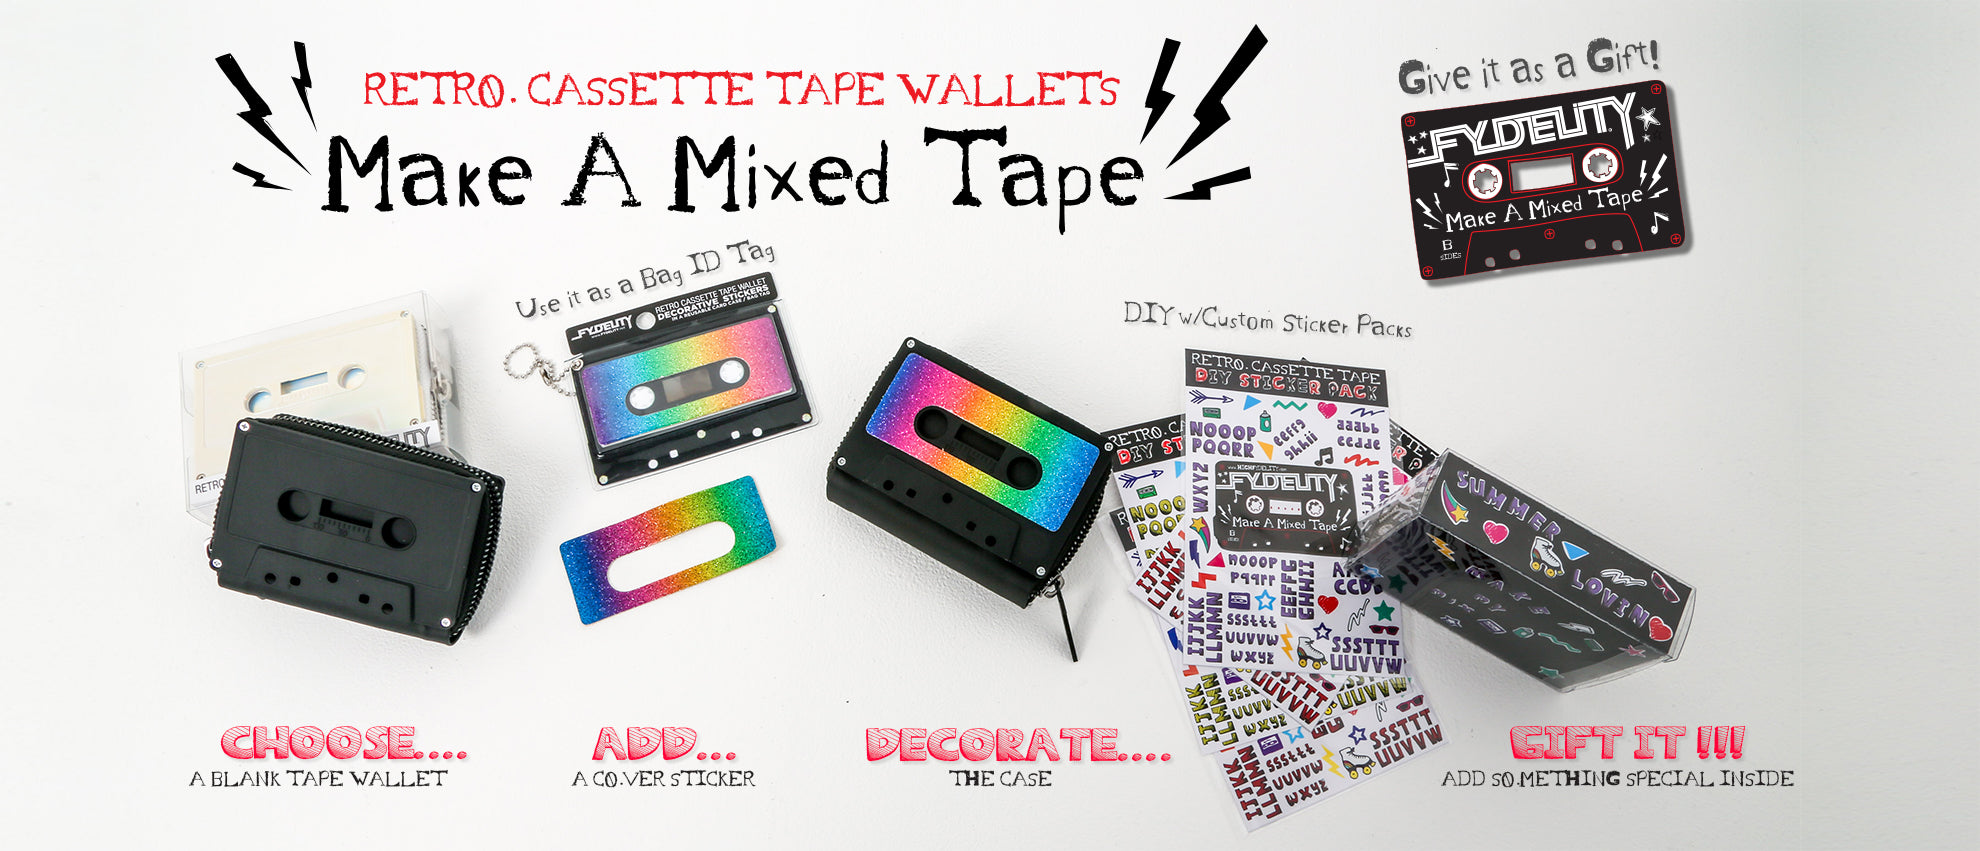 Make a Mixed Tape Cassette Wallet